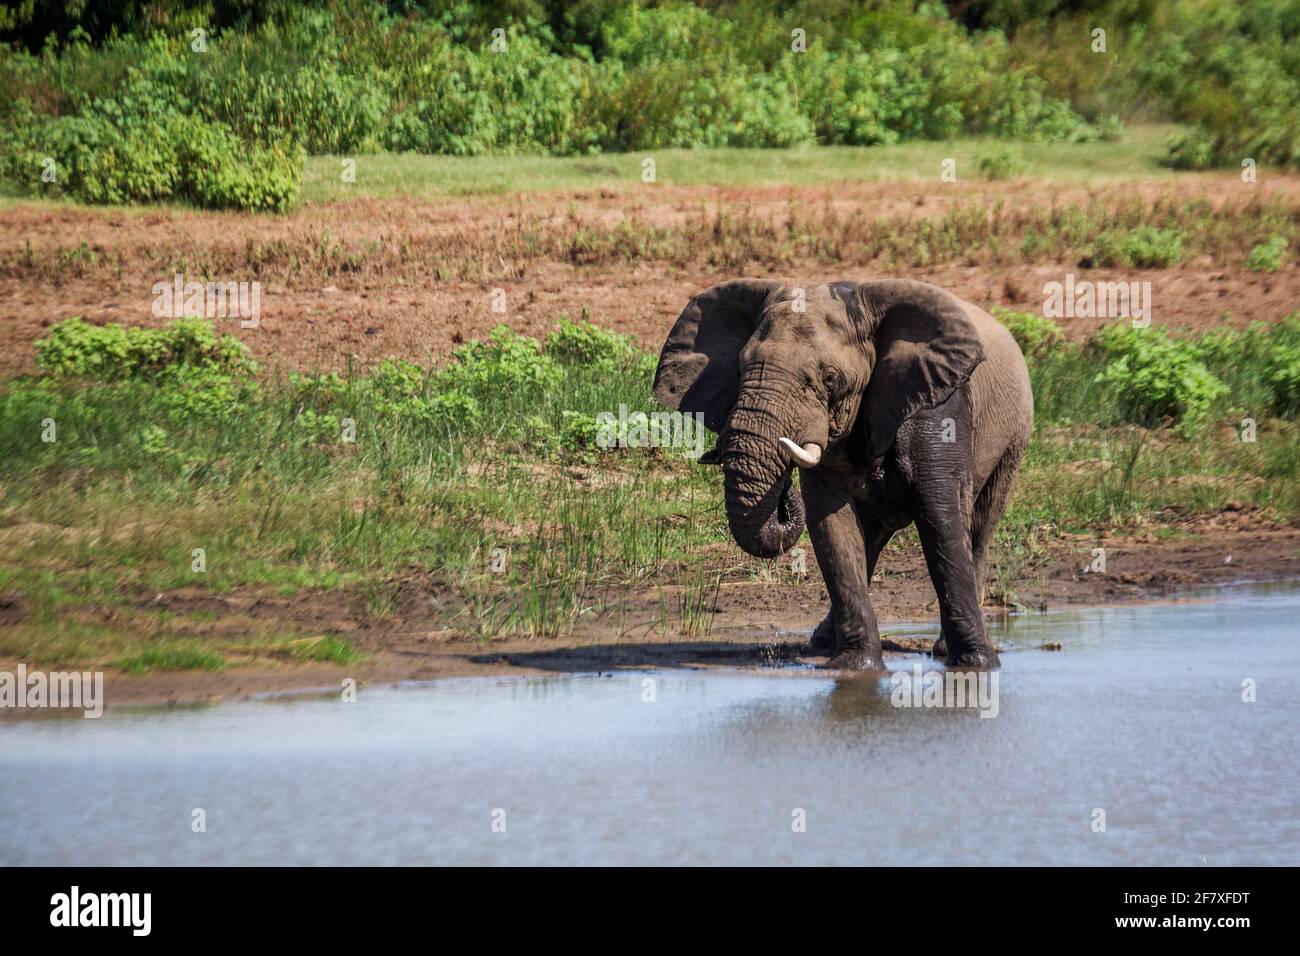 Éléphant de brousse africain buvant dans un lac dans le parc national Kruger, Afrique du Sud ; famille des espèces Loxodonta africana d'Elephantidae Banque D'Images